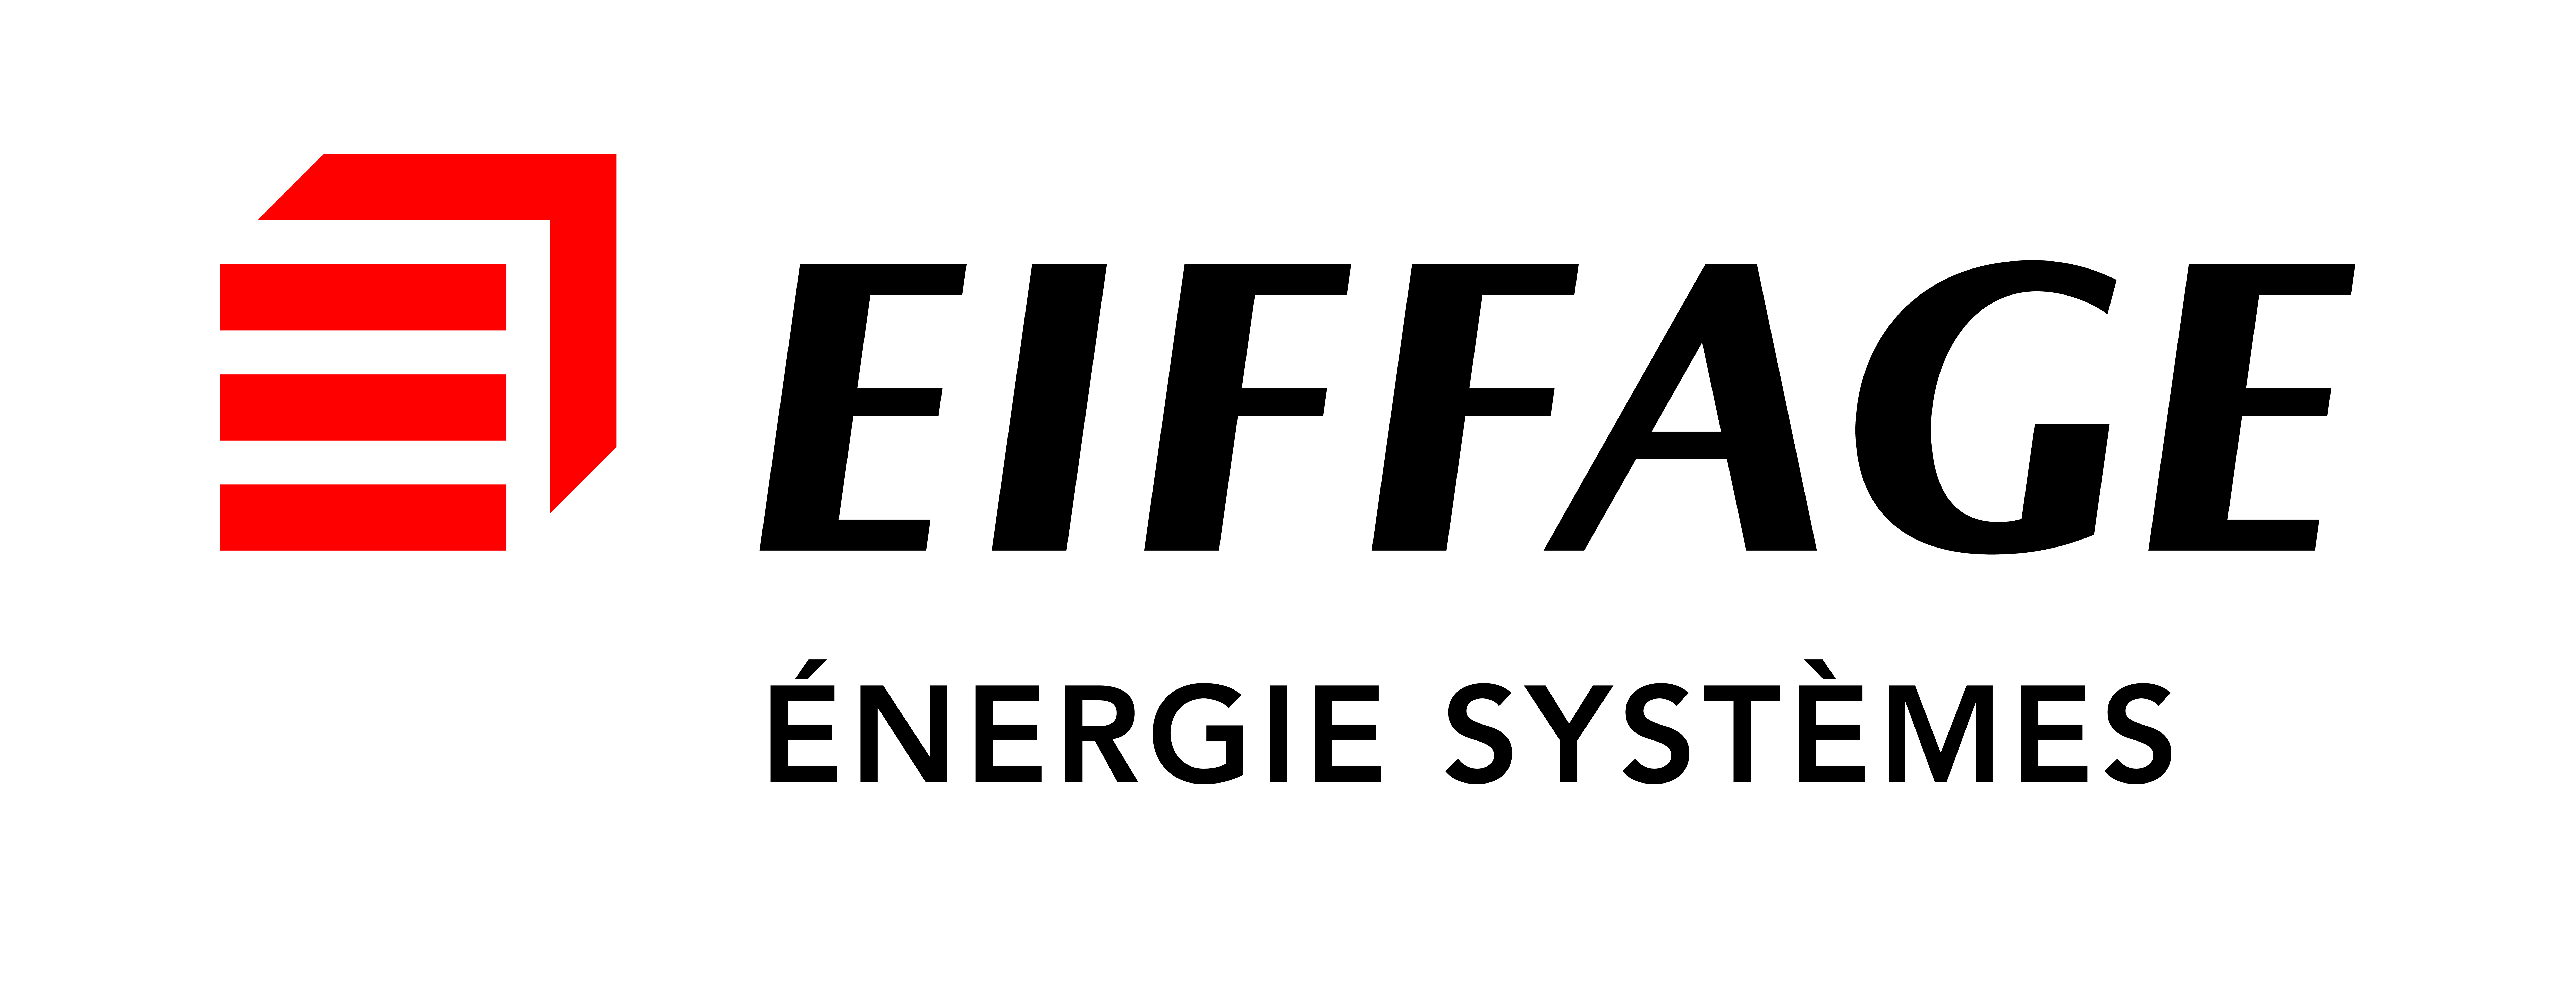 EIFFAGE-ENERGIE-SYSTEMES-logo